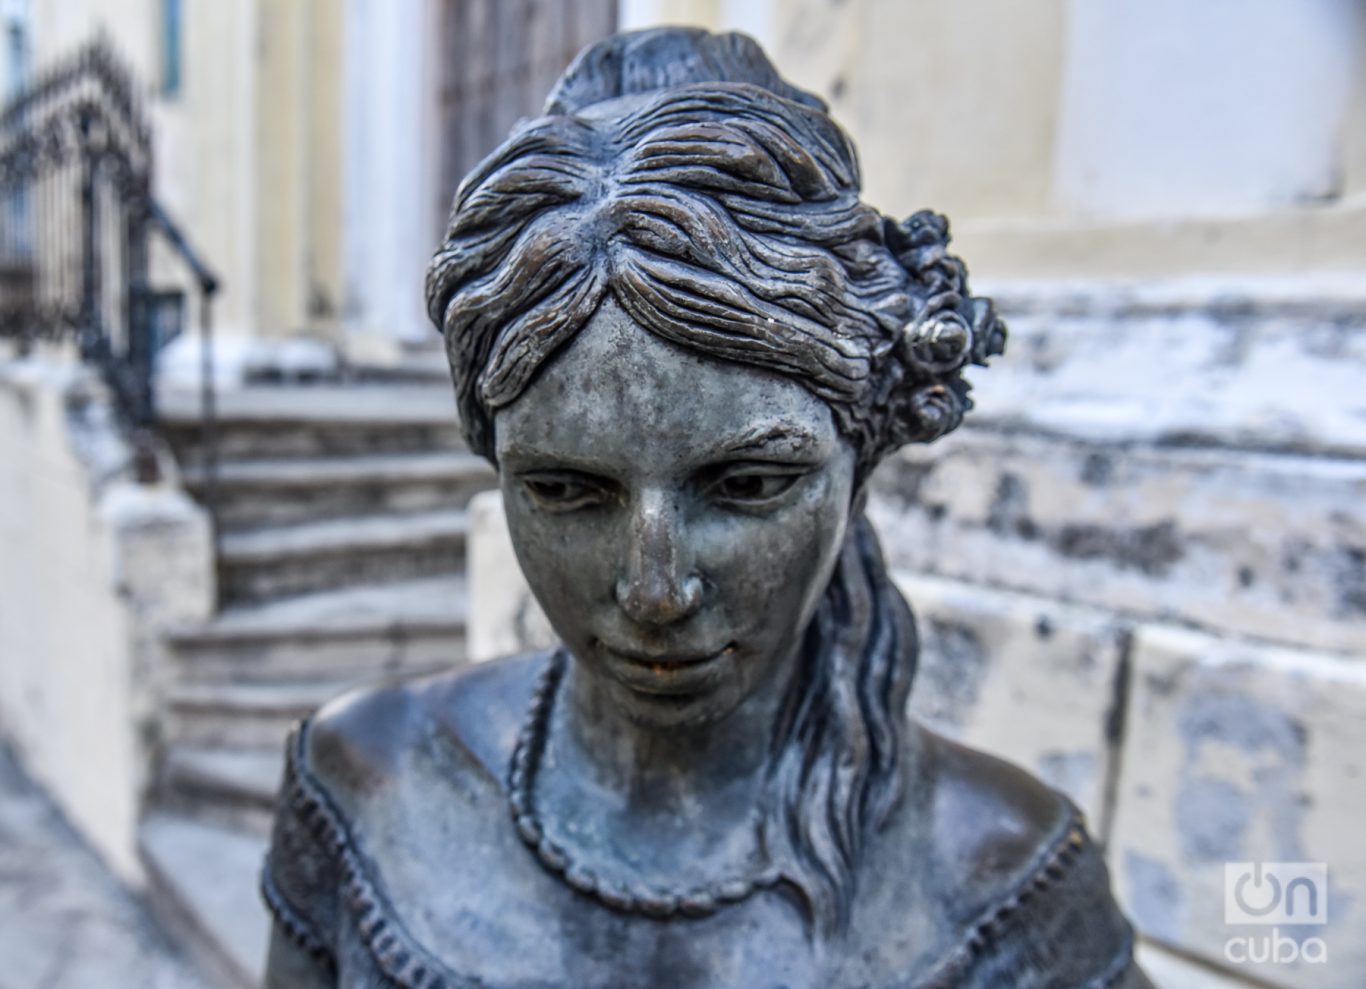  La sutil expresión de tristeza en sus ojos de la escultura de Cecilia Valdés. Foto: Kaloian.